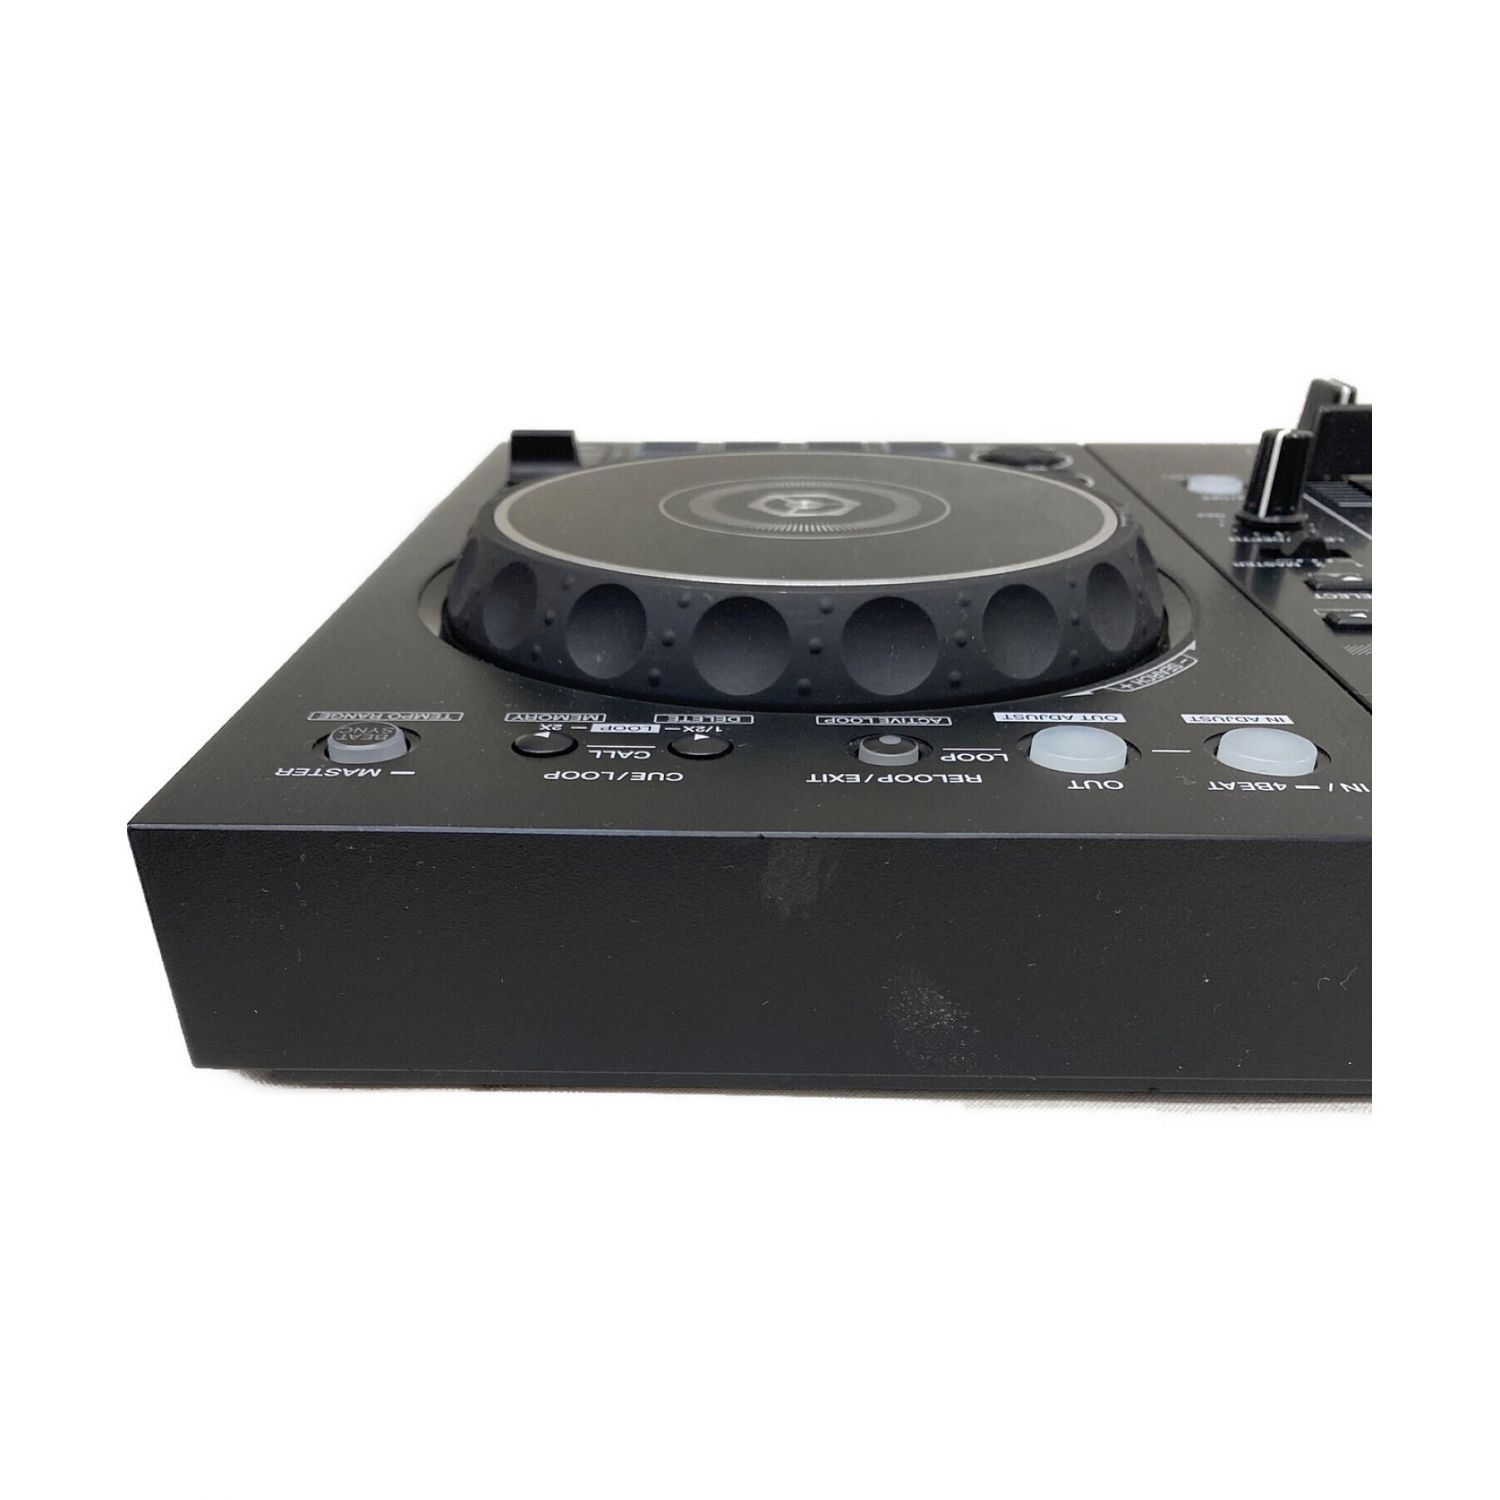 Pioneer (パイオニア) rekordbox対応 2ch DJコントローラー DDJ-400